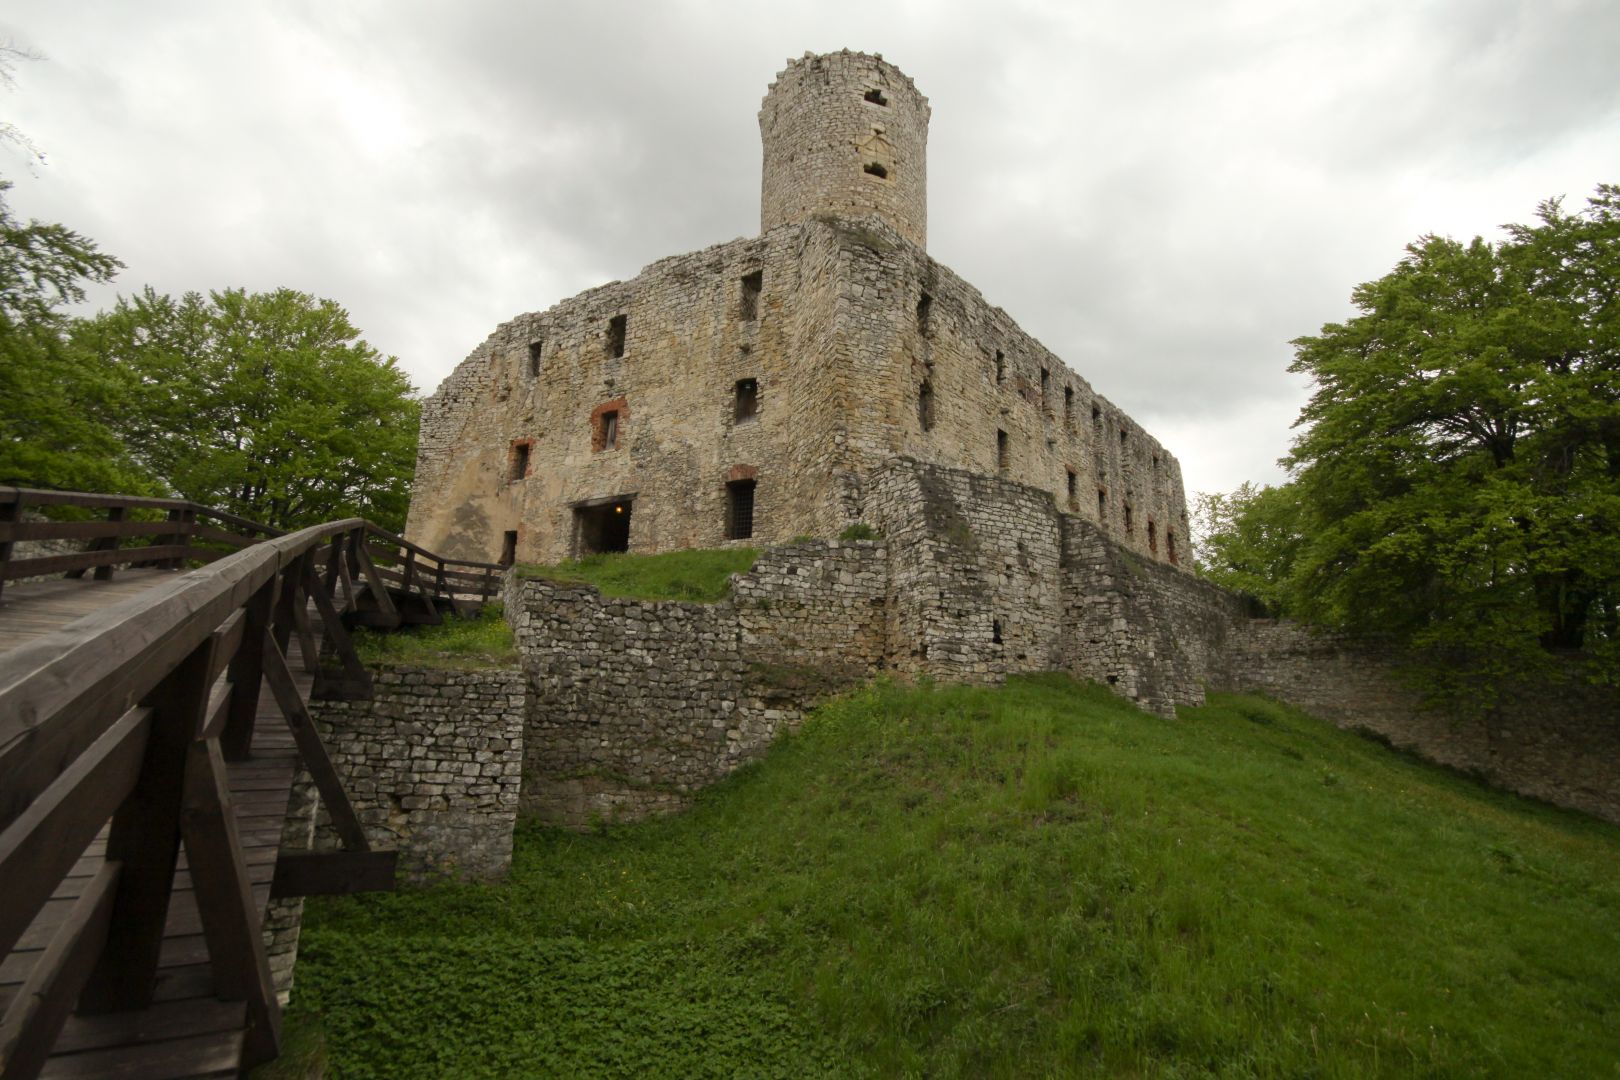 Entrance to the Lipowiec castle